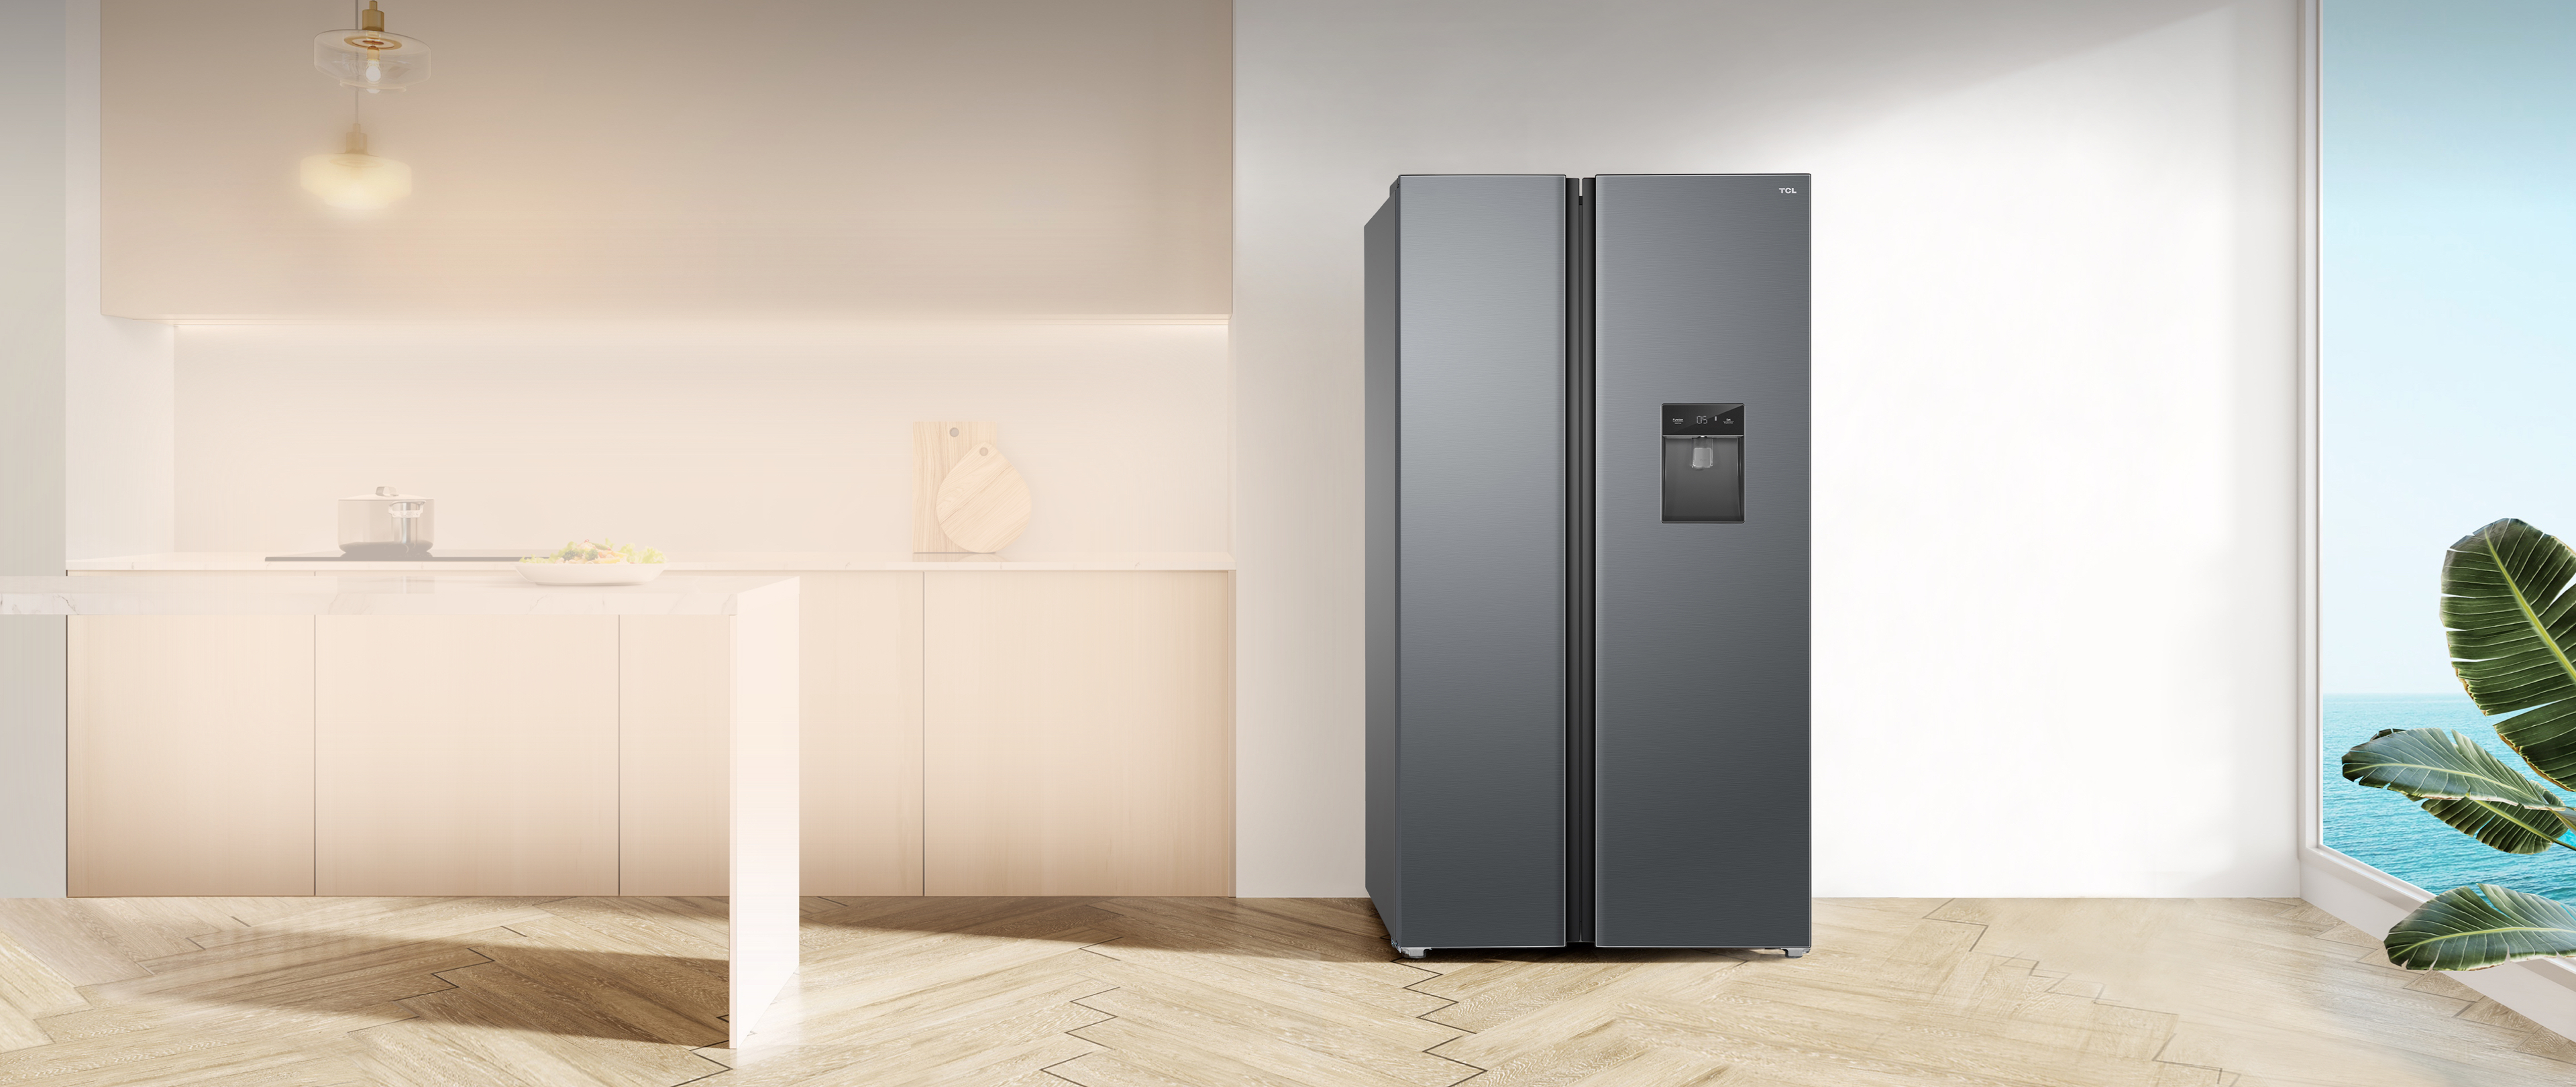 фото: Умная вентиляция и двойной «Эко инвертор»: TCL выводит на российский рынок новый холодильник